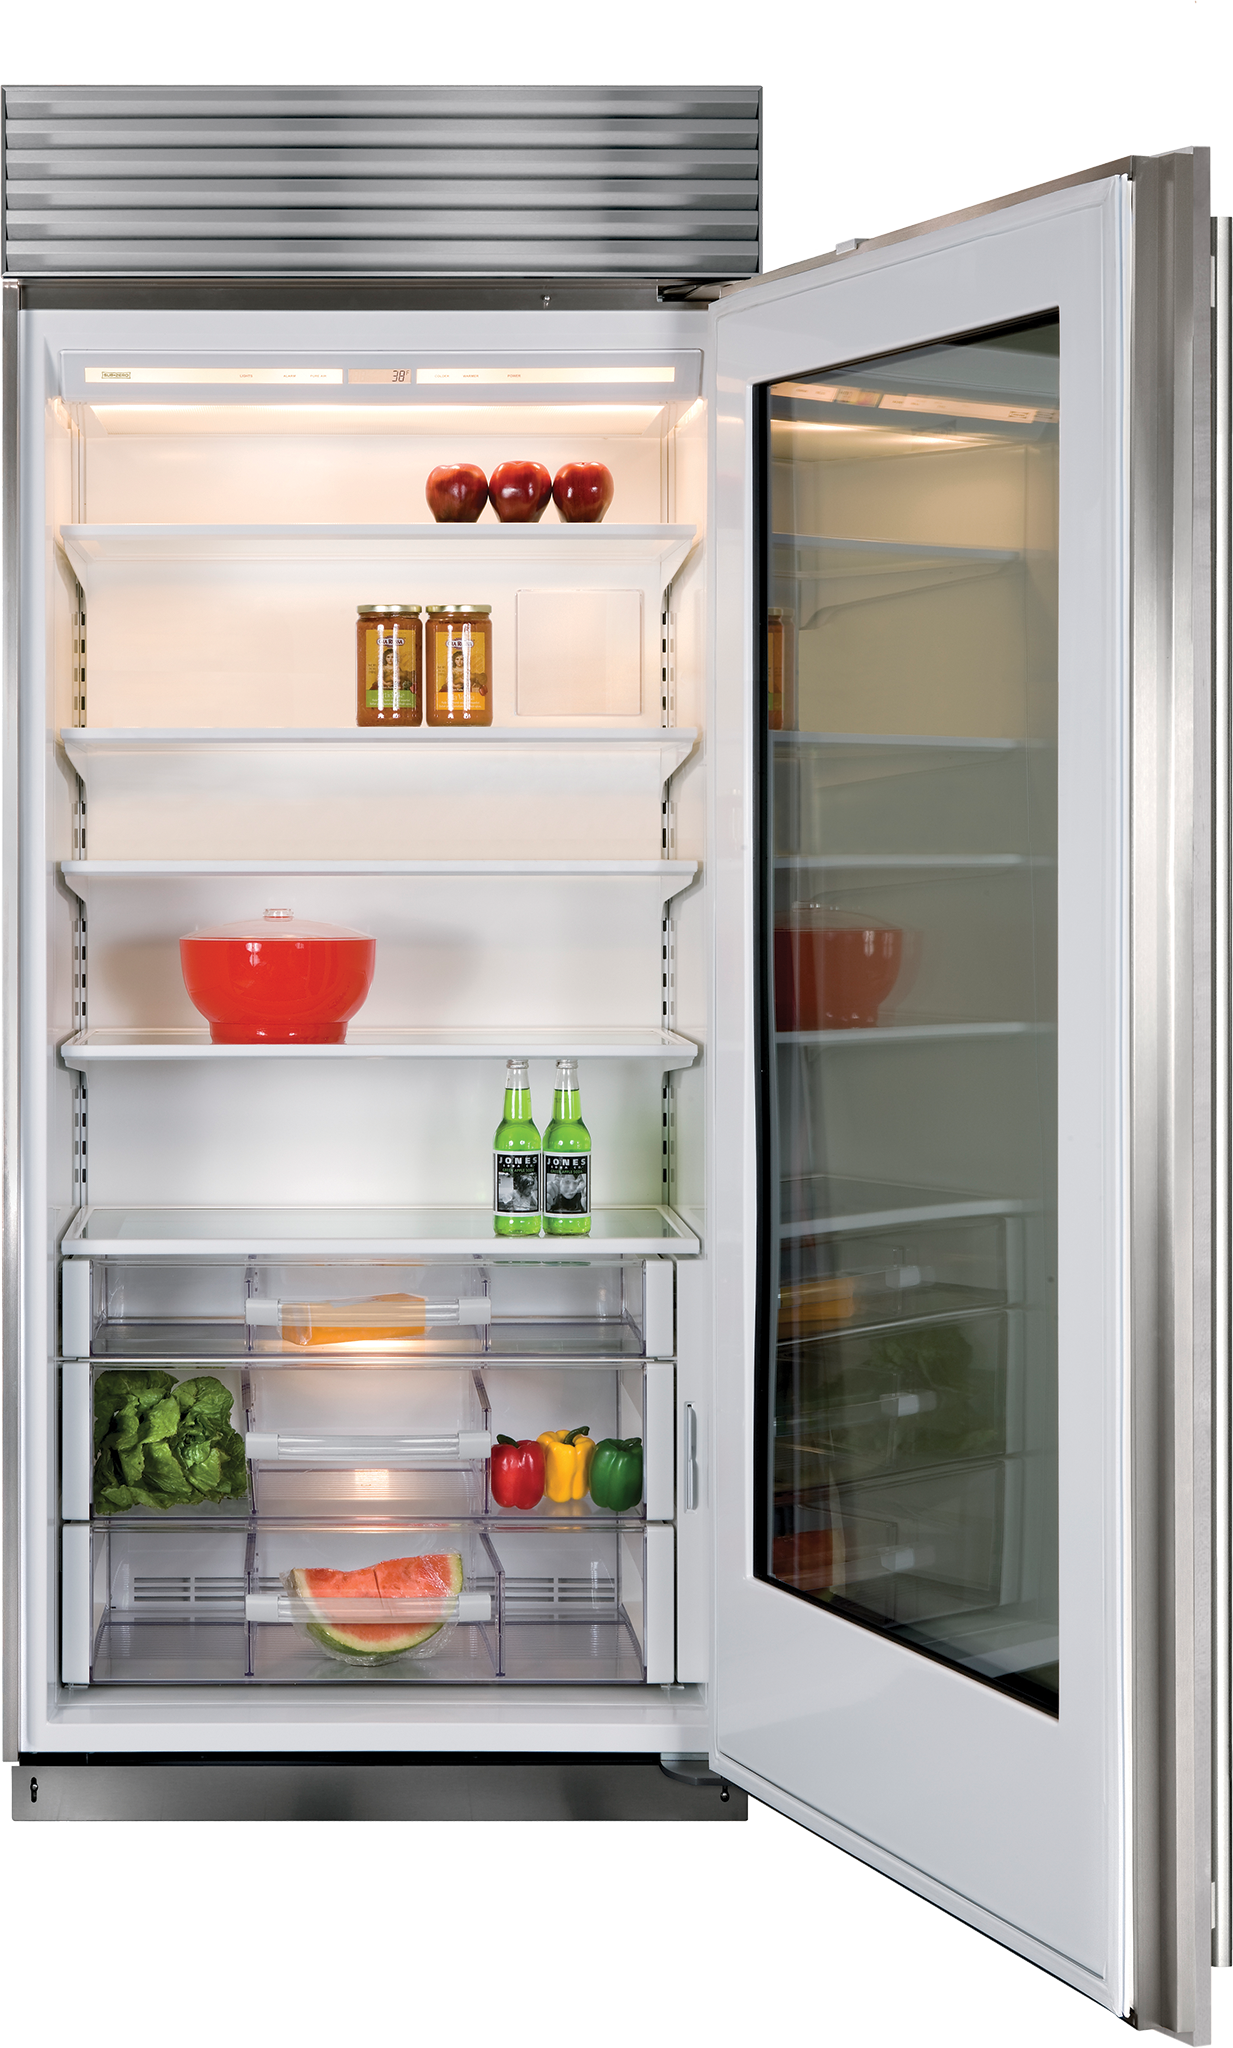 abt refrigerators